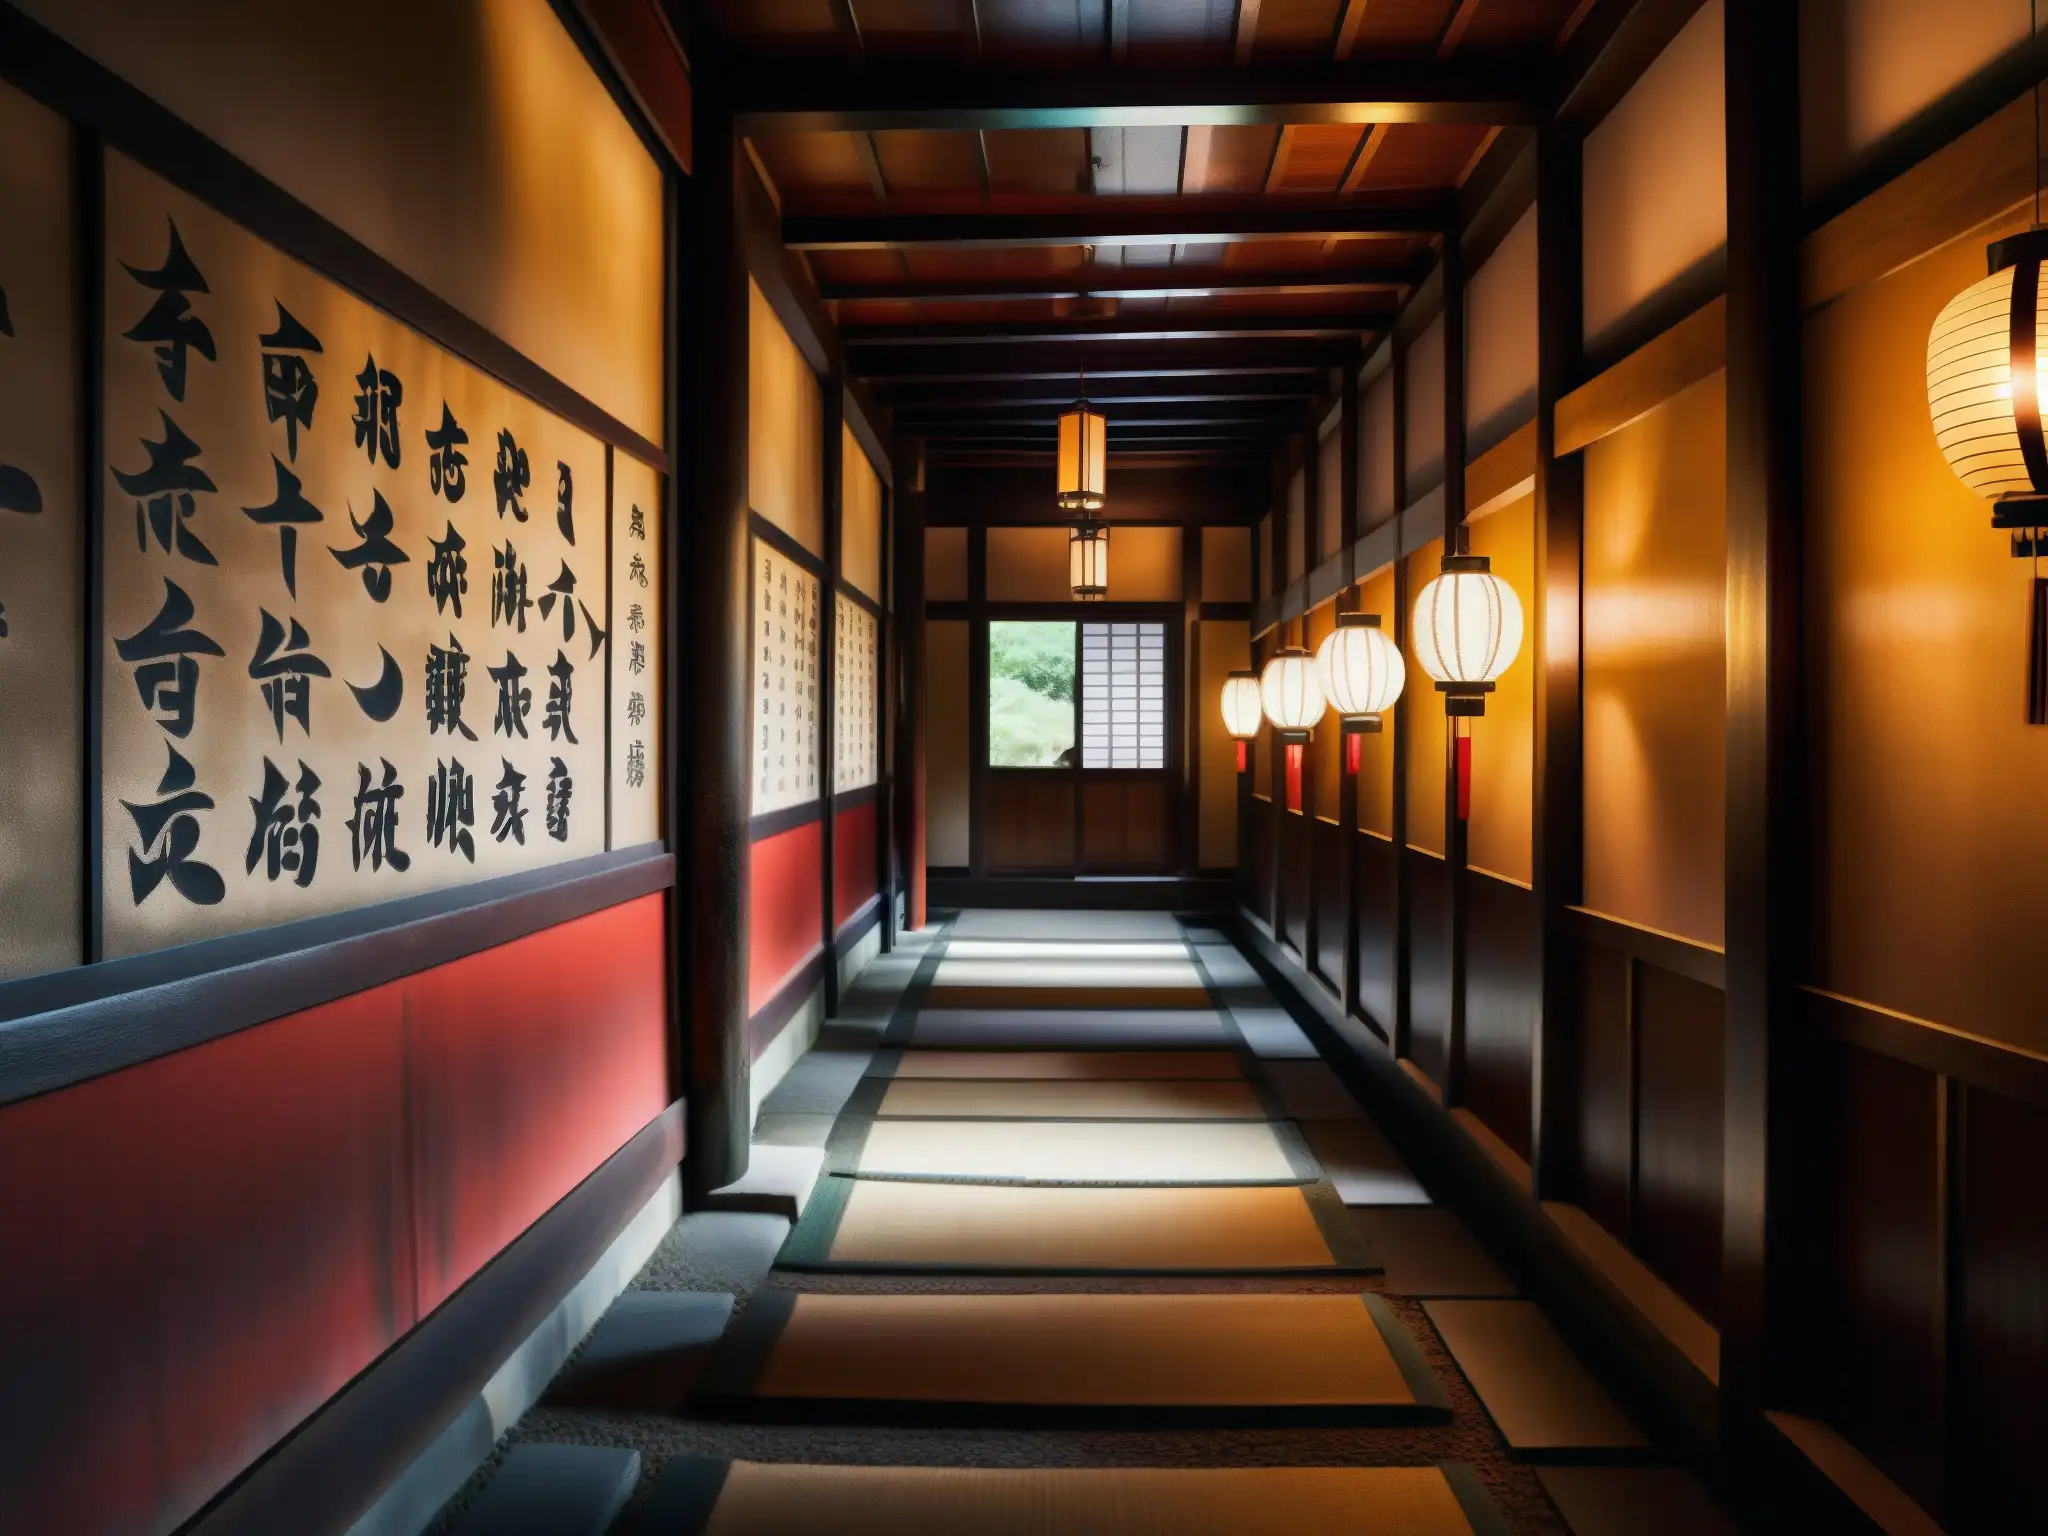 Explora el misterio del Minotauro Japonés en los intrincados pasillos de un antiguo templo con arquitectura tradicional y misteriosos símbolos